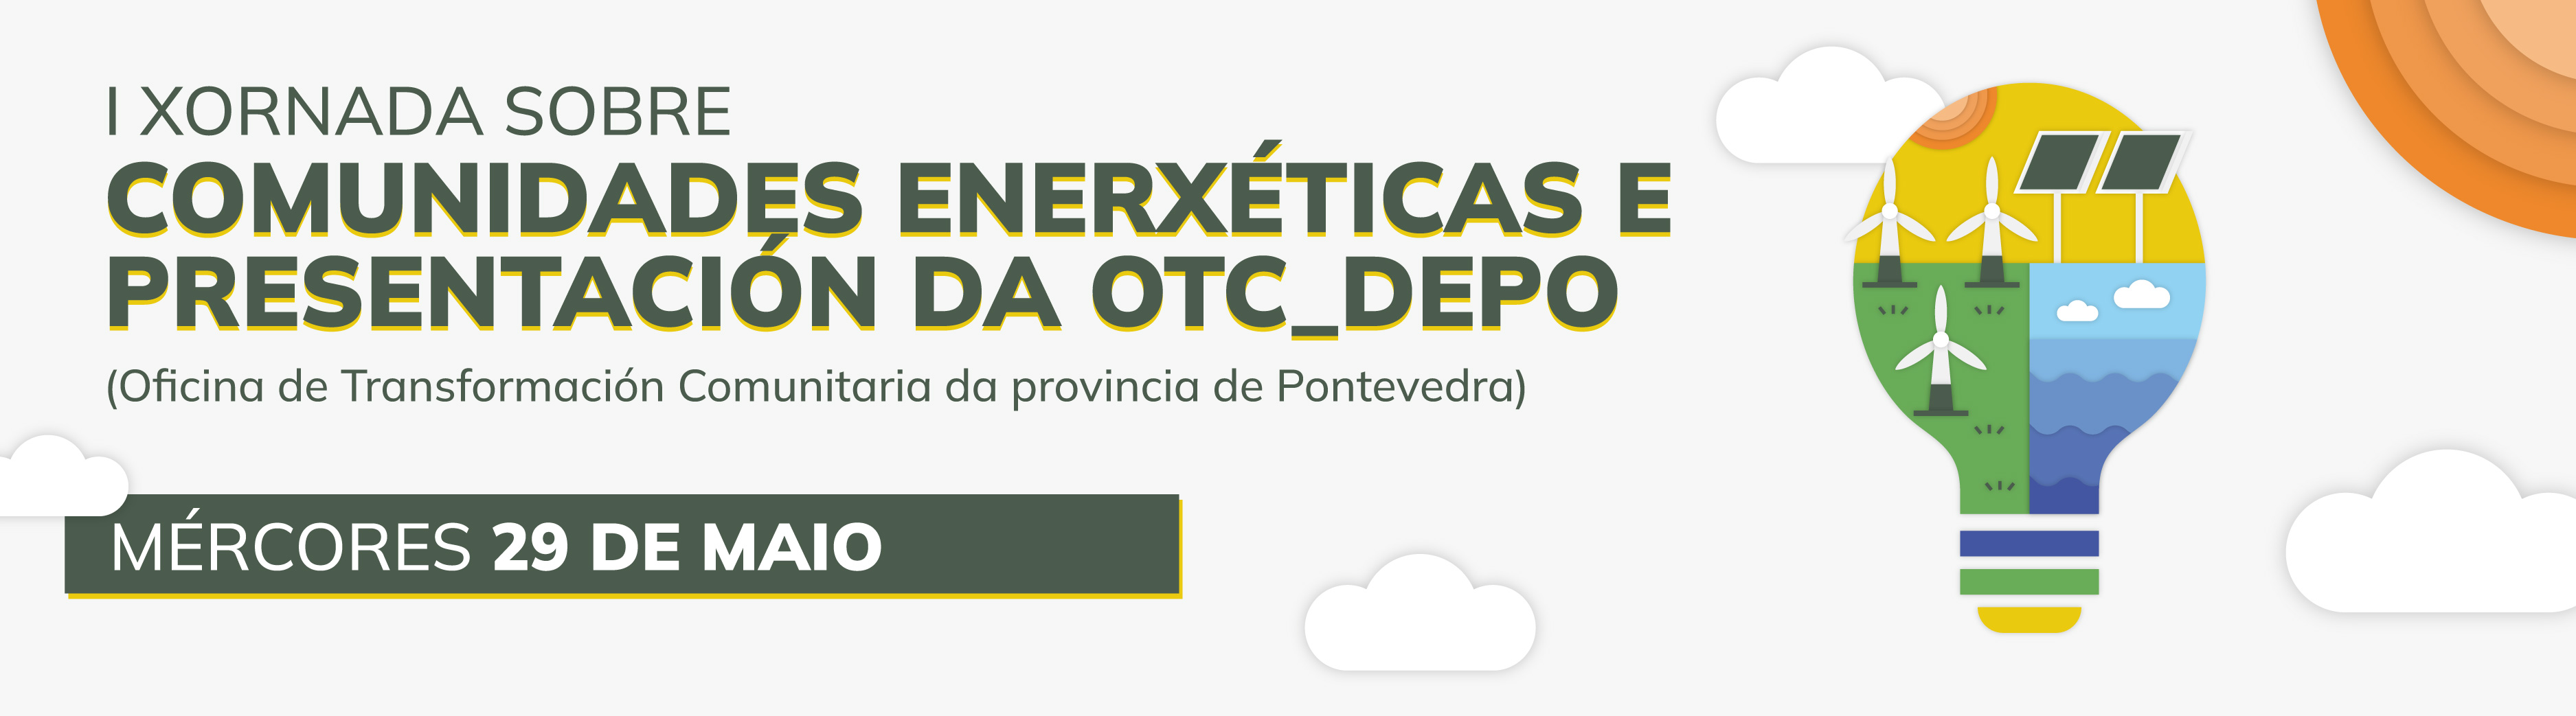 
		1.ª Xornada sobre Comunidades Enerxéticas e presentación da Oficina de Transformación Comunitaria da provincia de Pontevedra (OTC_DEPO)
		
	